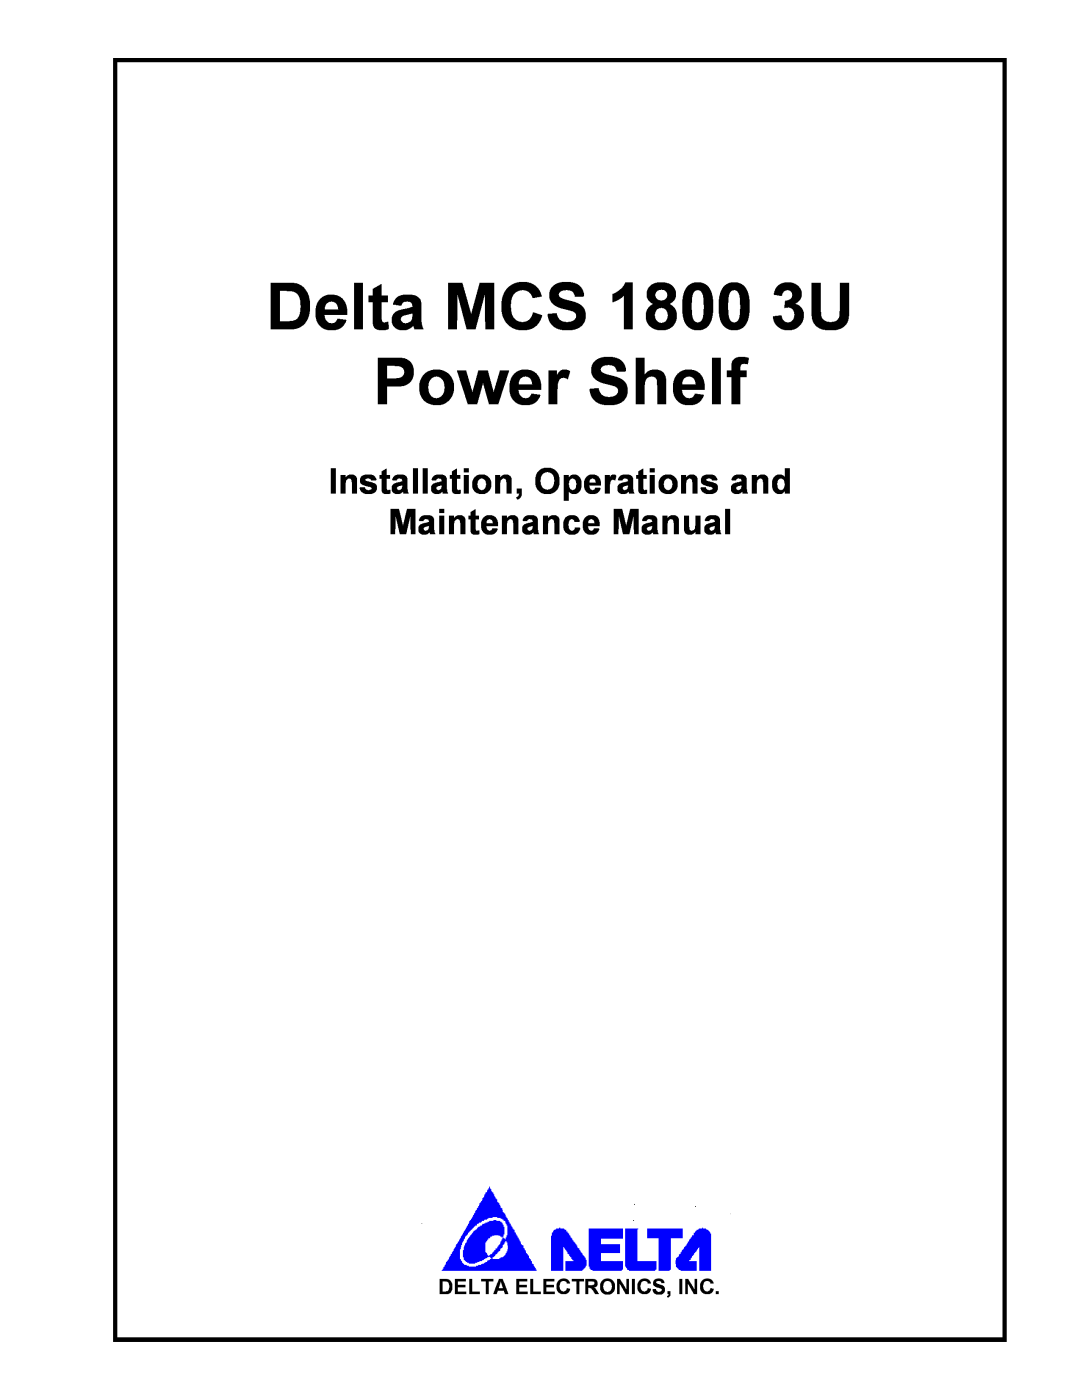 Delta MCS-1800 Delta MCS 1800 3U Power Shelf, Installation, Operations and Maintenance Manual, Delta Electronics, Inc 